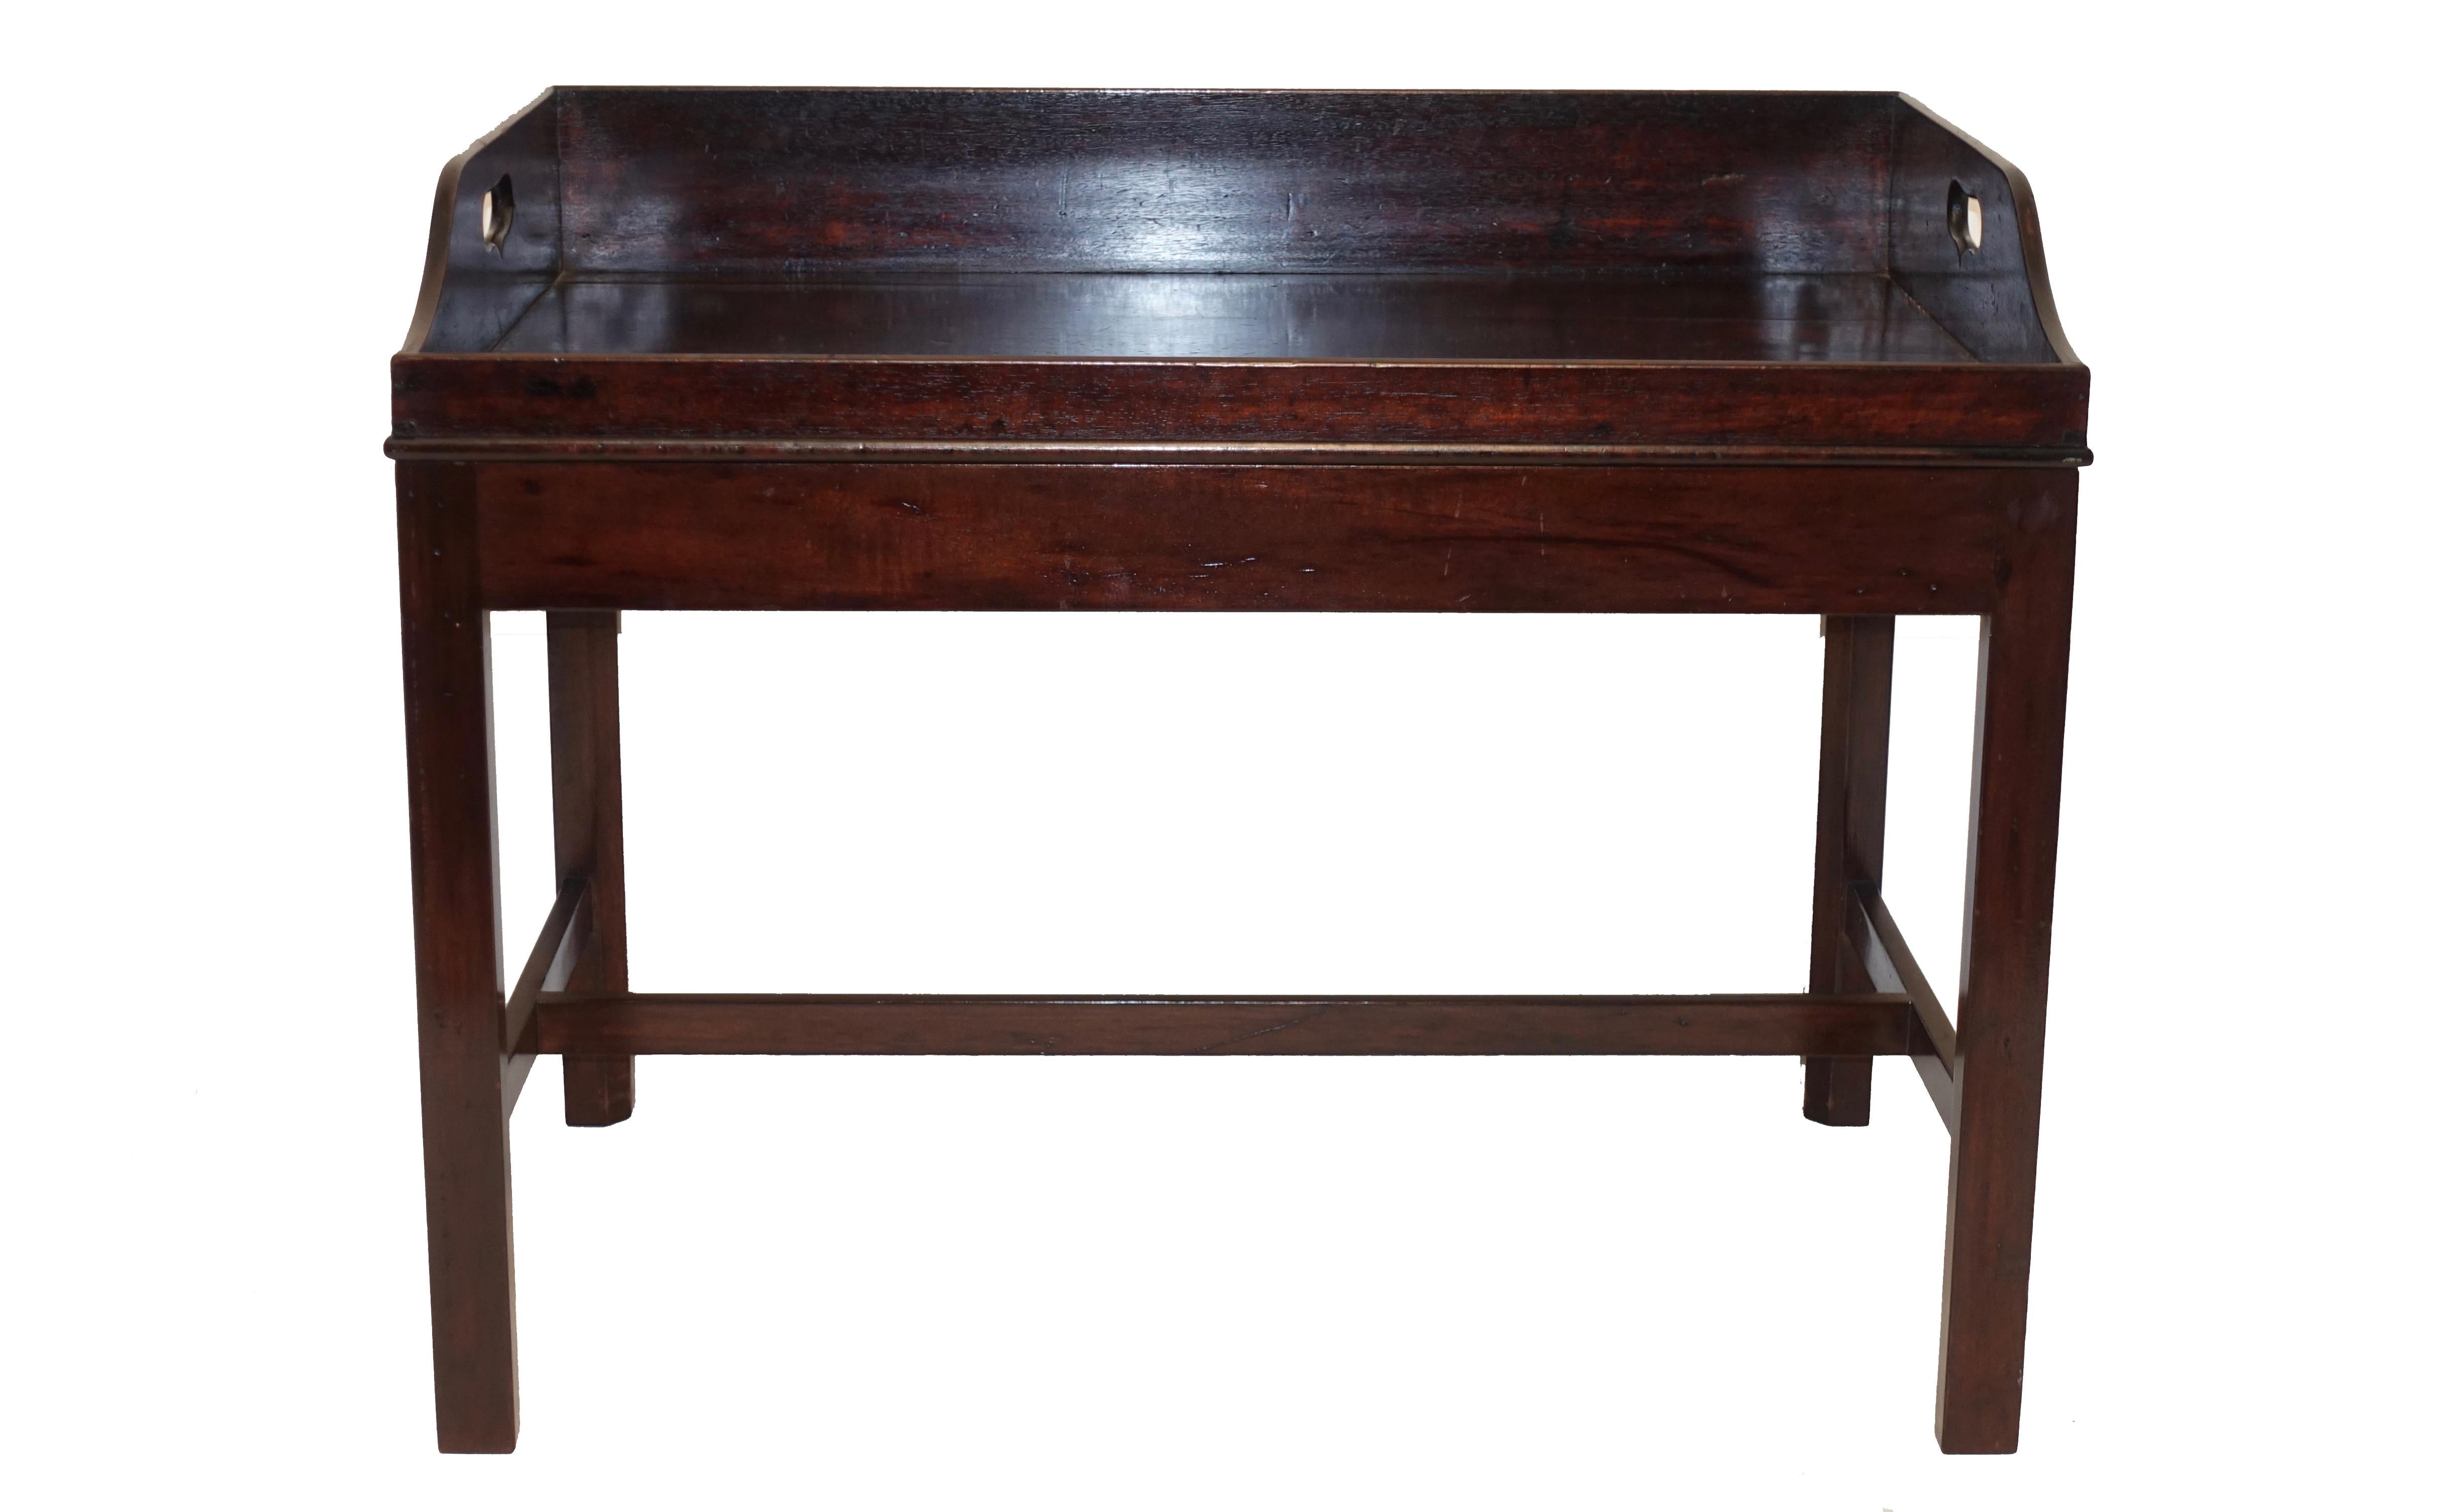 Georgian mahogany butlers tray on later made mahogany stand, England, mid-19th century.